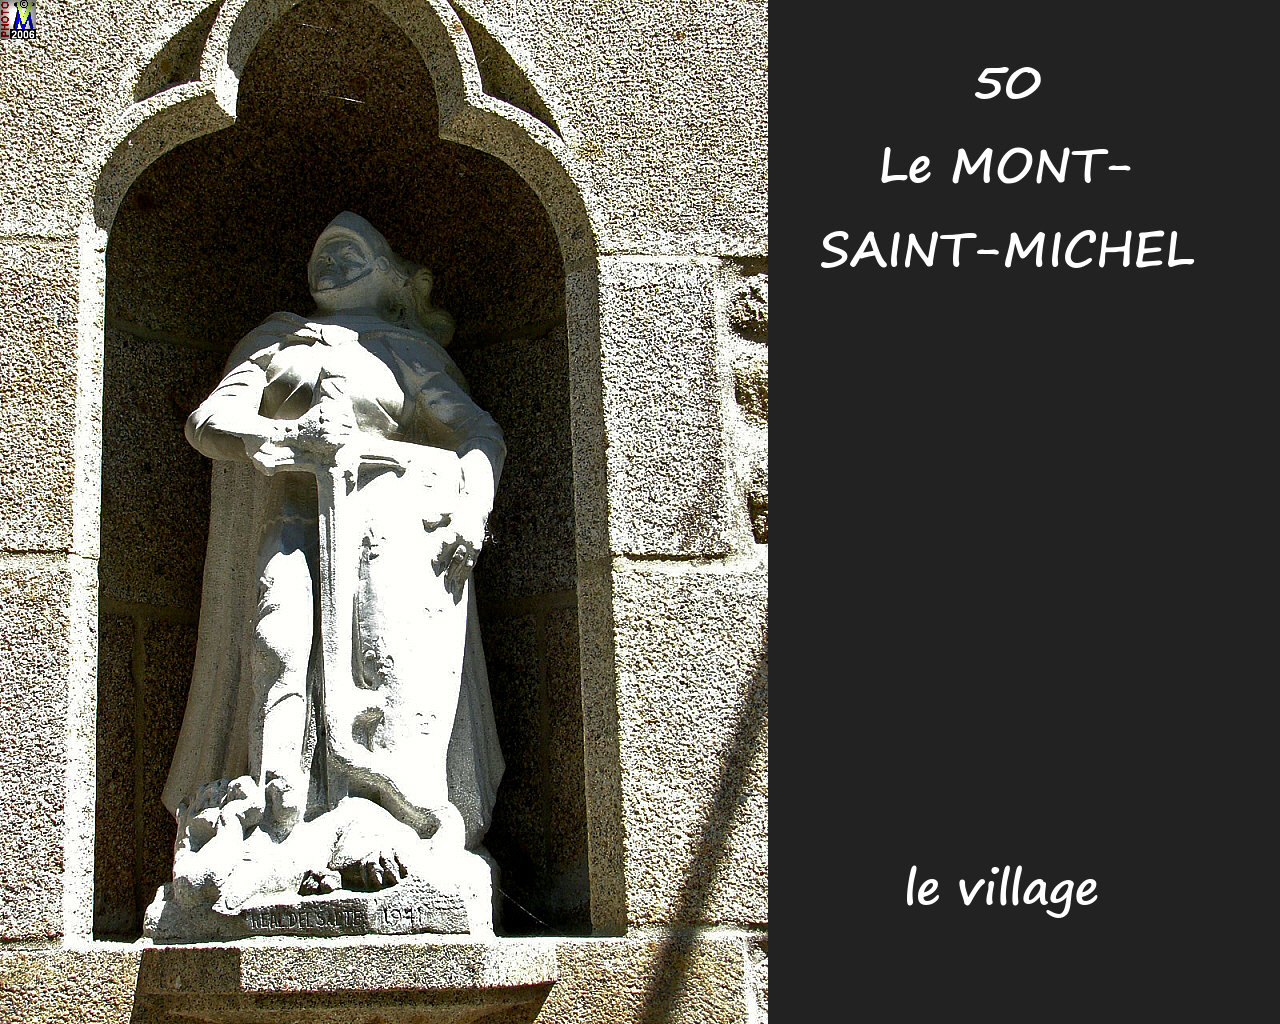 50LE-MONT-ST-MICHEL_village_176.jpg